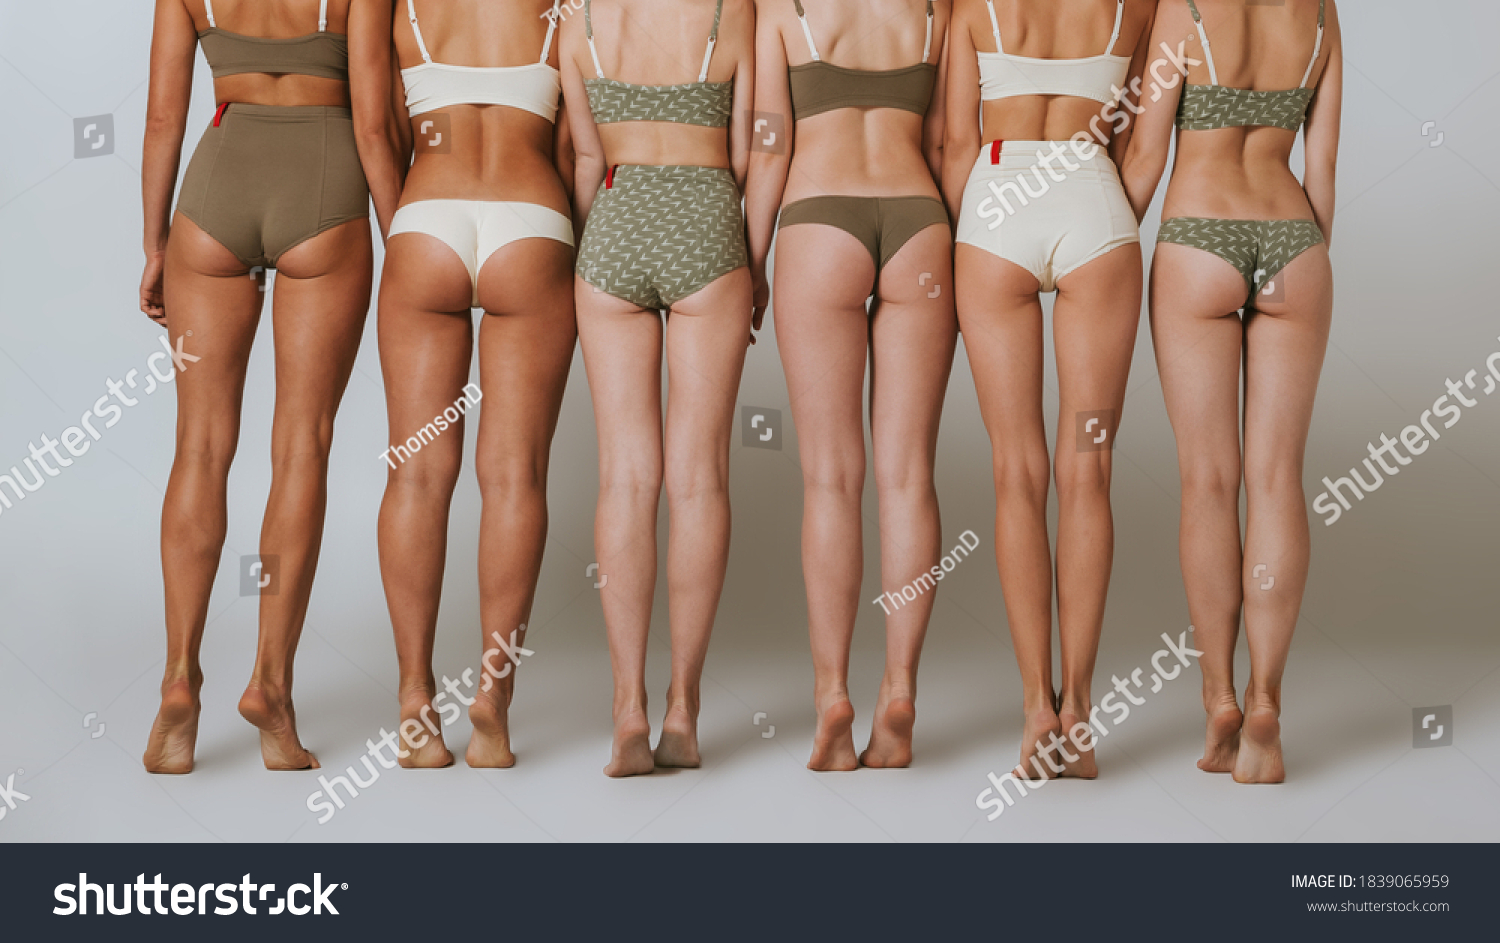 Pictures Of Girls In Underwear